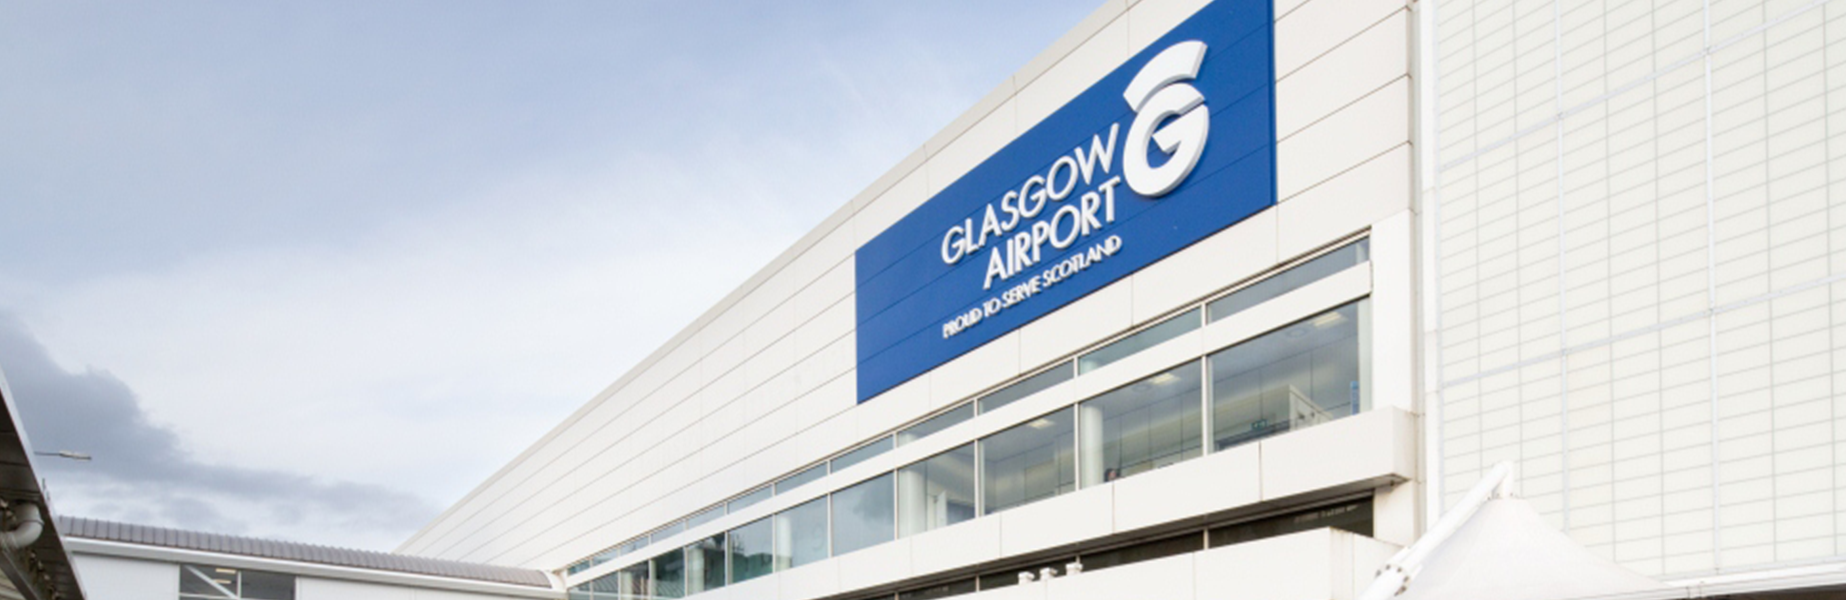 glasgow airport website header